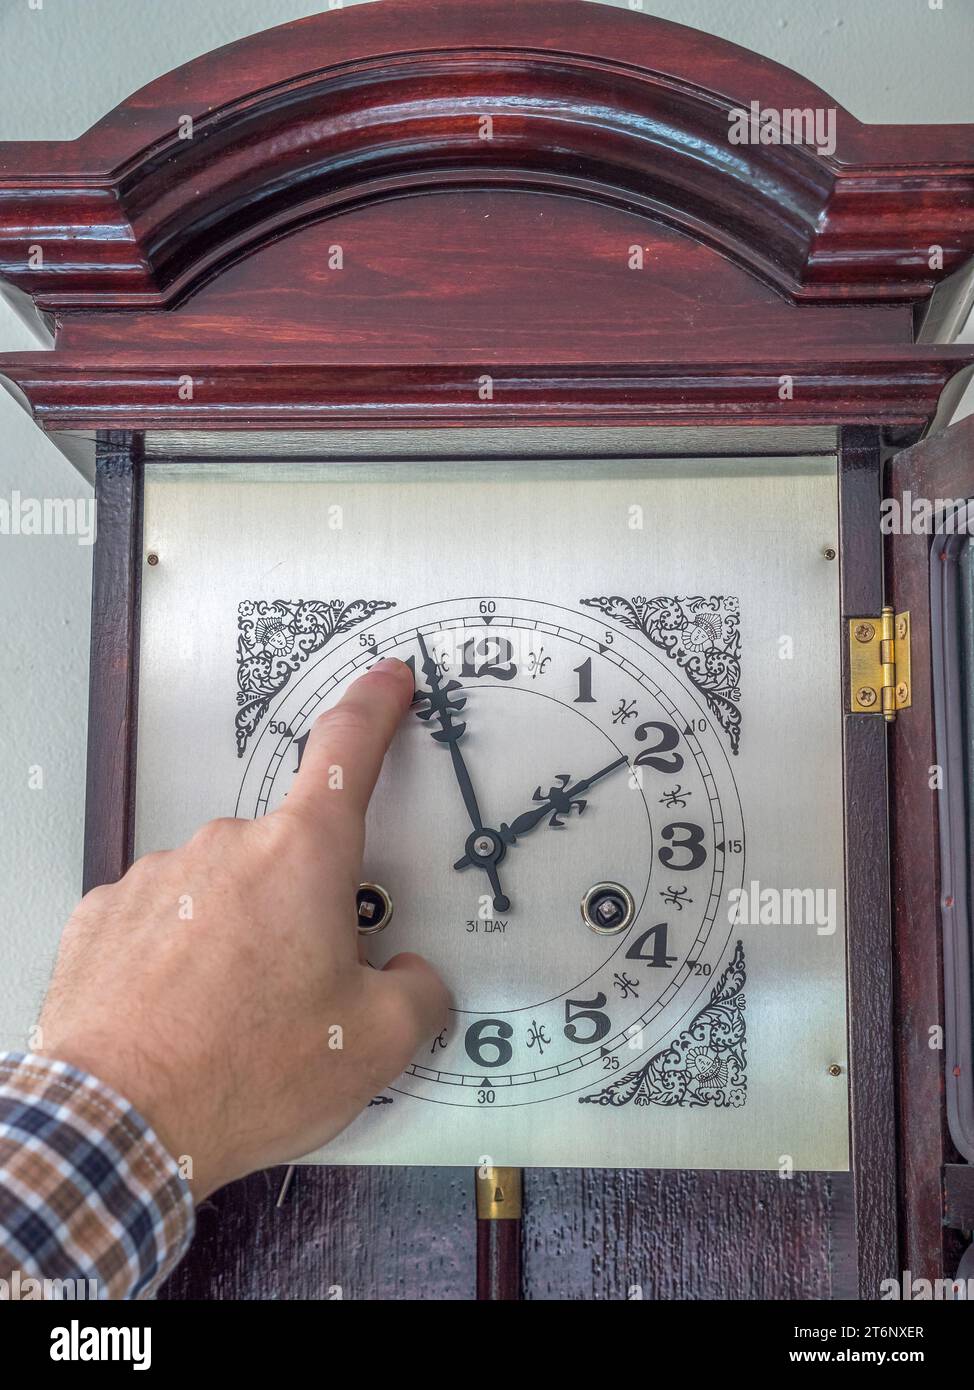 Gros plan du doigt masculin changeant les aiguilles de l'horloge de l'heure d'été à l'heure d'hiver Banque D'Images